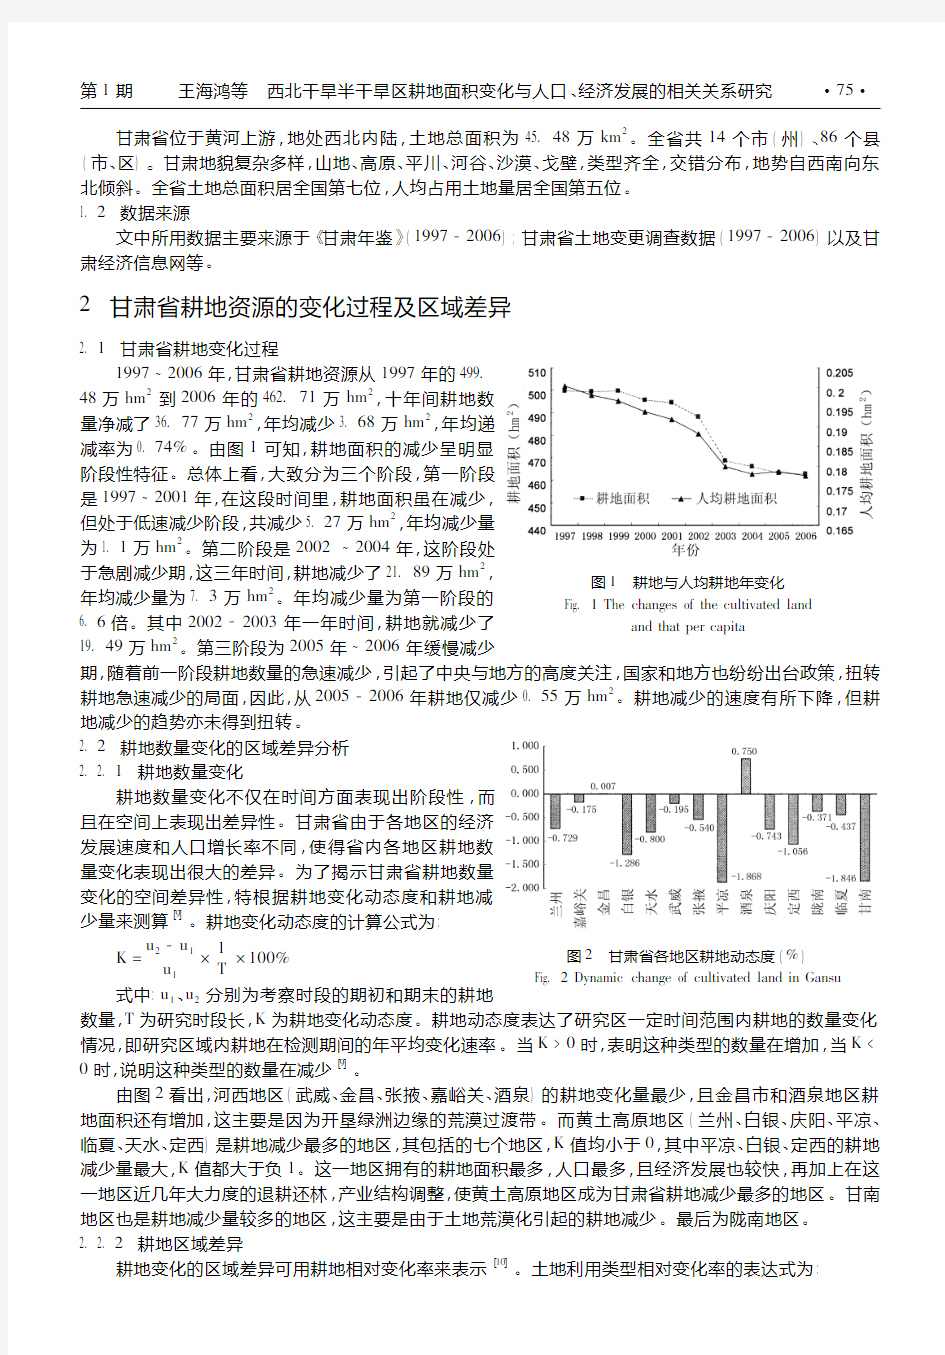 西北干旱半干旱区耕地面积变化与人口_经济发展的相关关系研究_以甘肃省为例